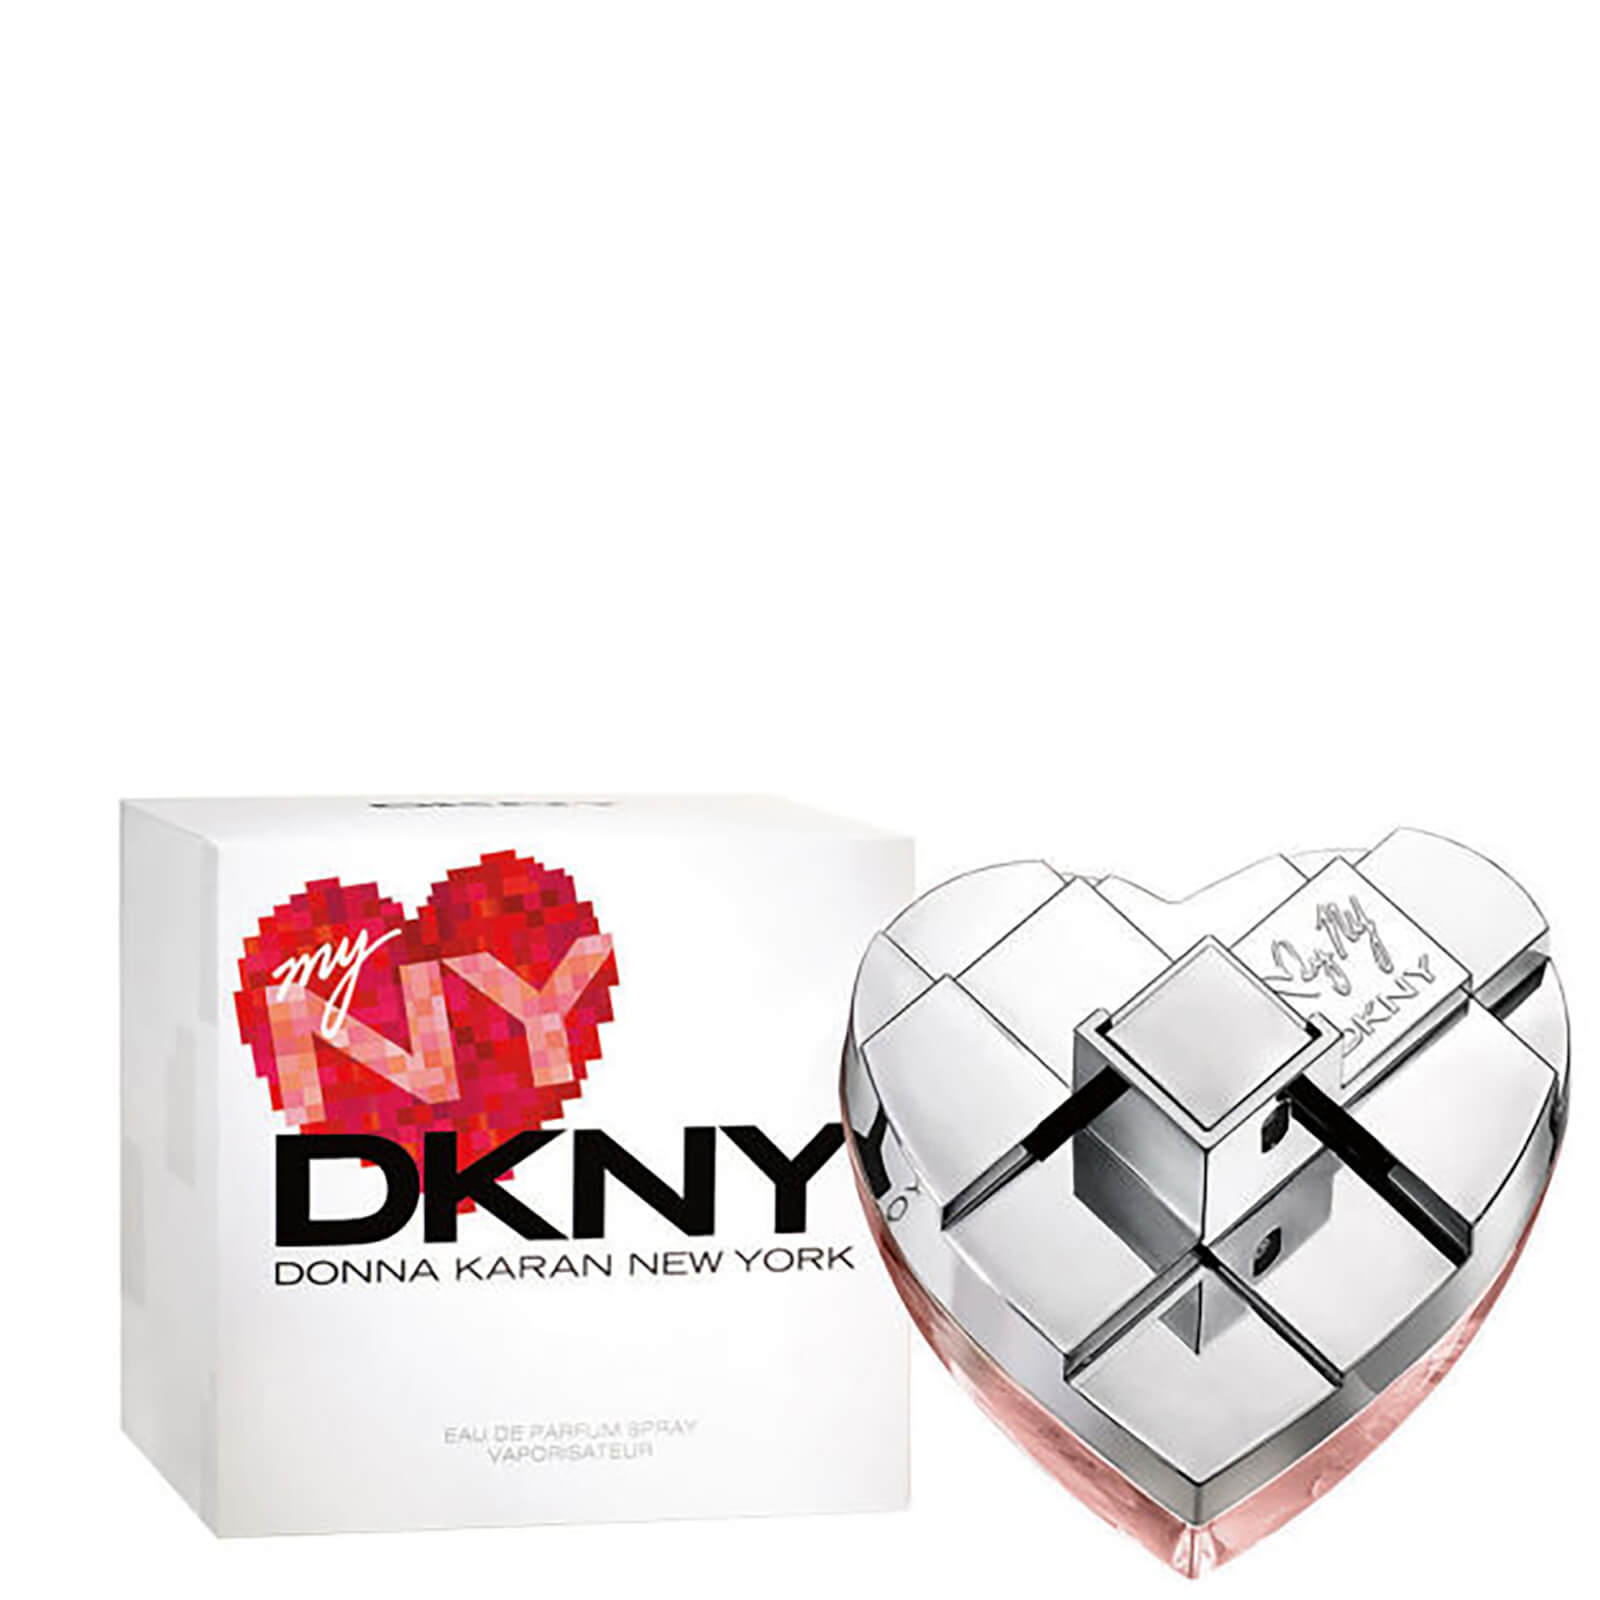 DKNY MYNY Eau de parfum 100 ml